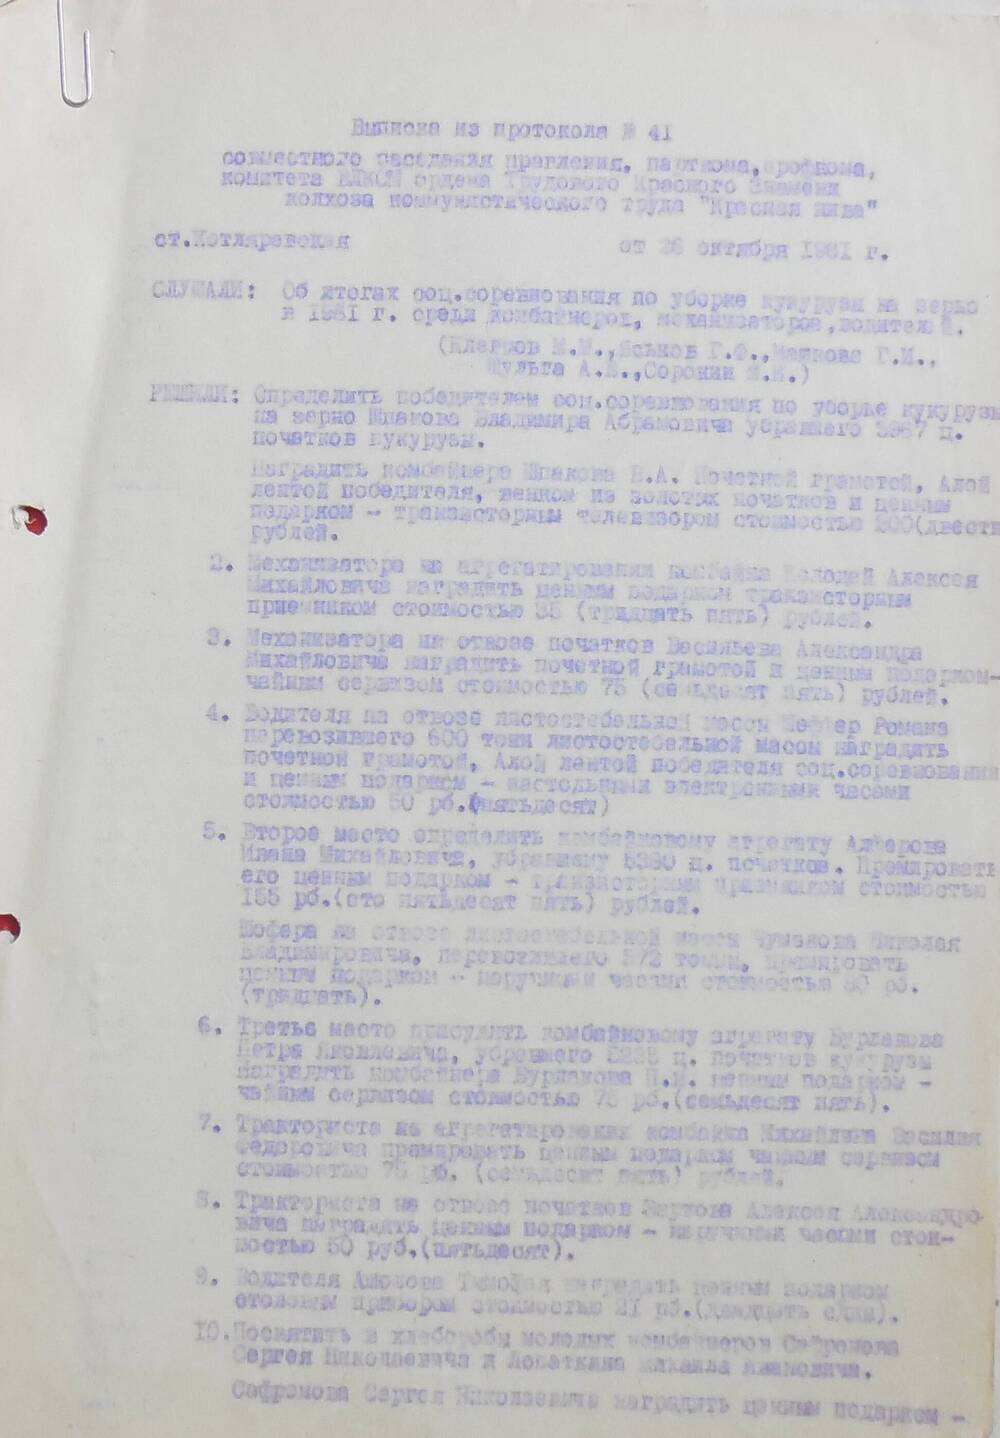 Выписка из протокола № 41 от 26 октября 1981 года.